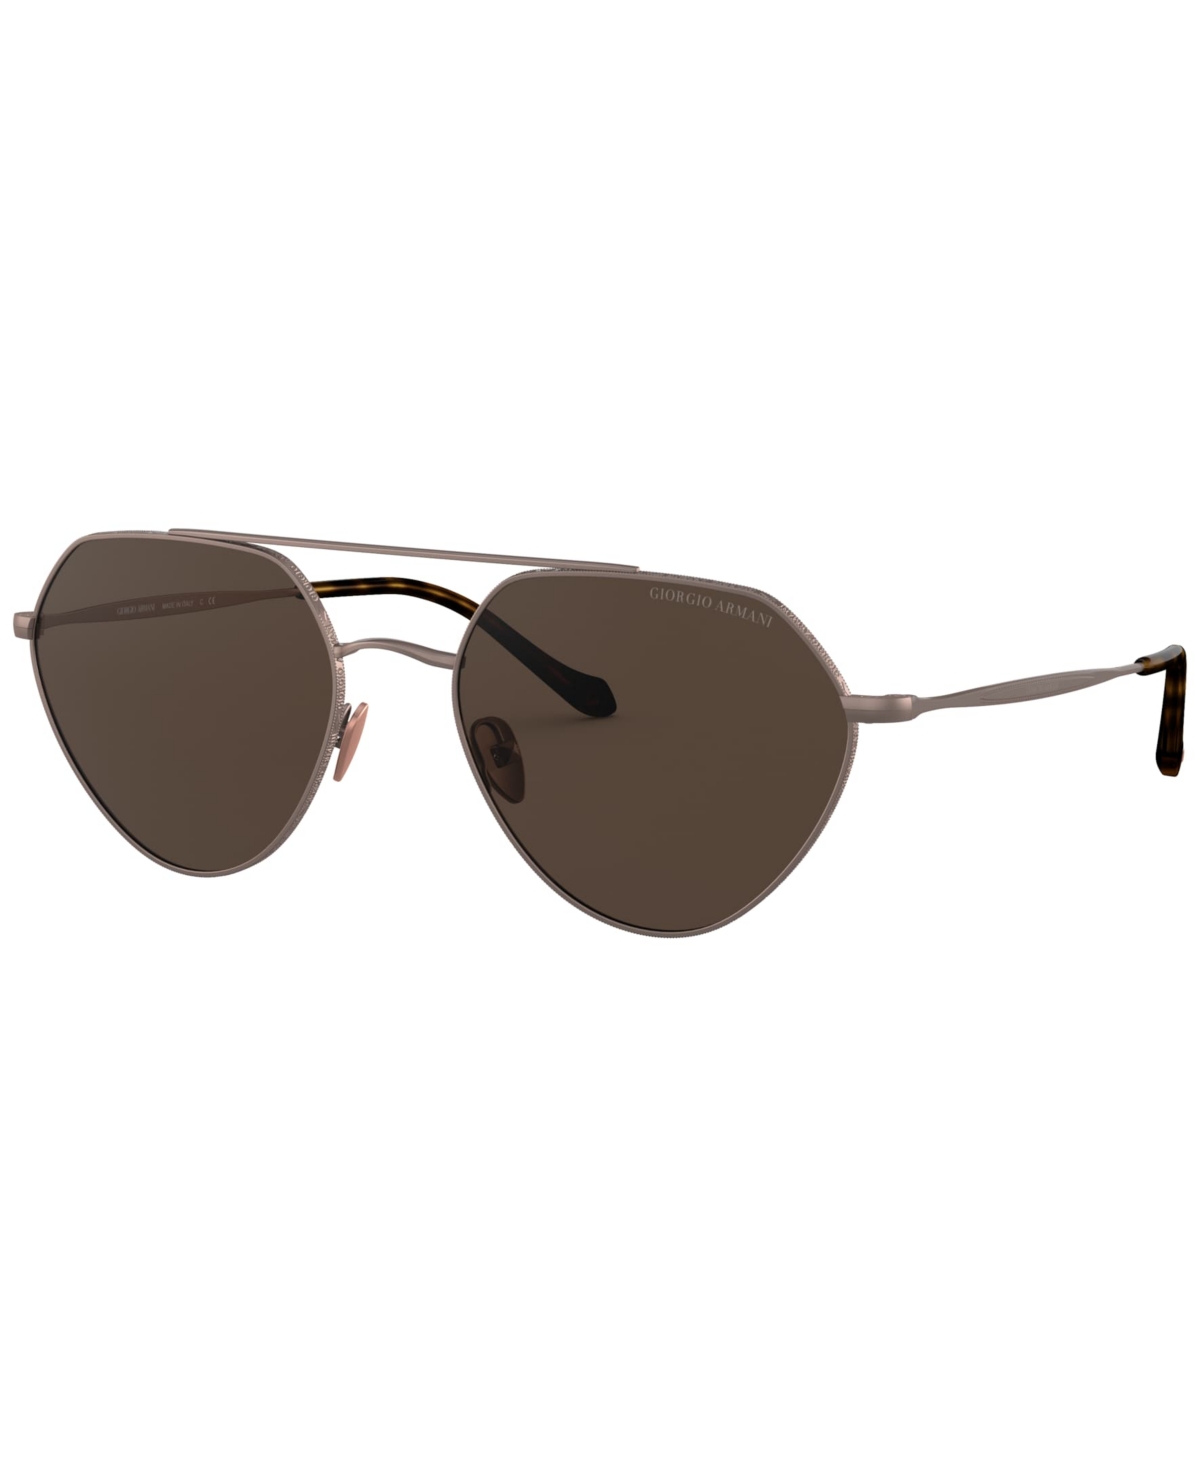 Women's Sunglasses, AR6111 - Matte Bronze